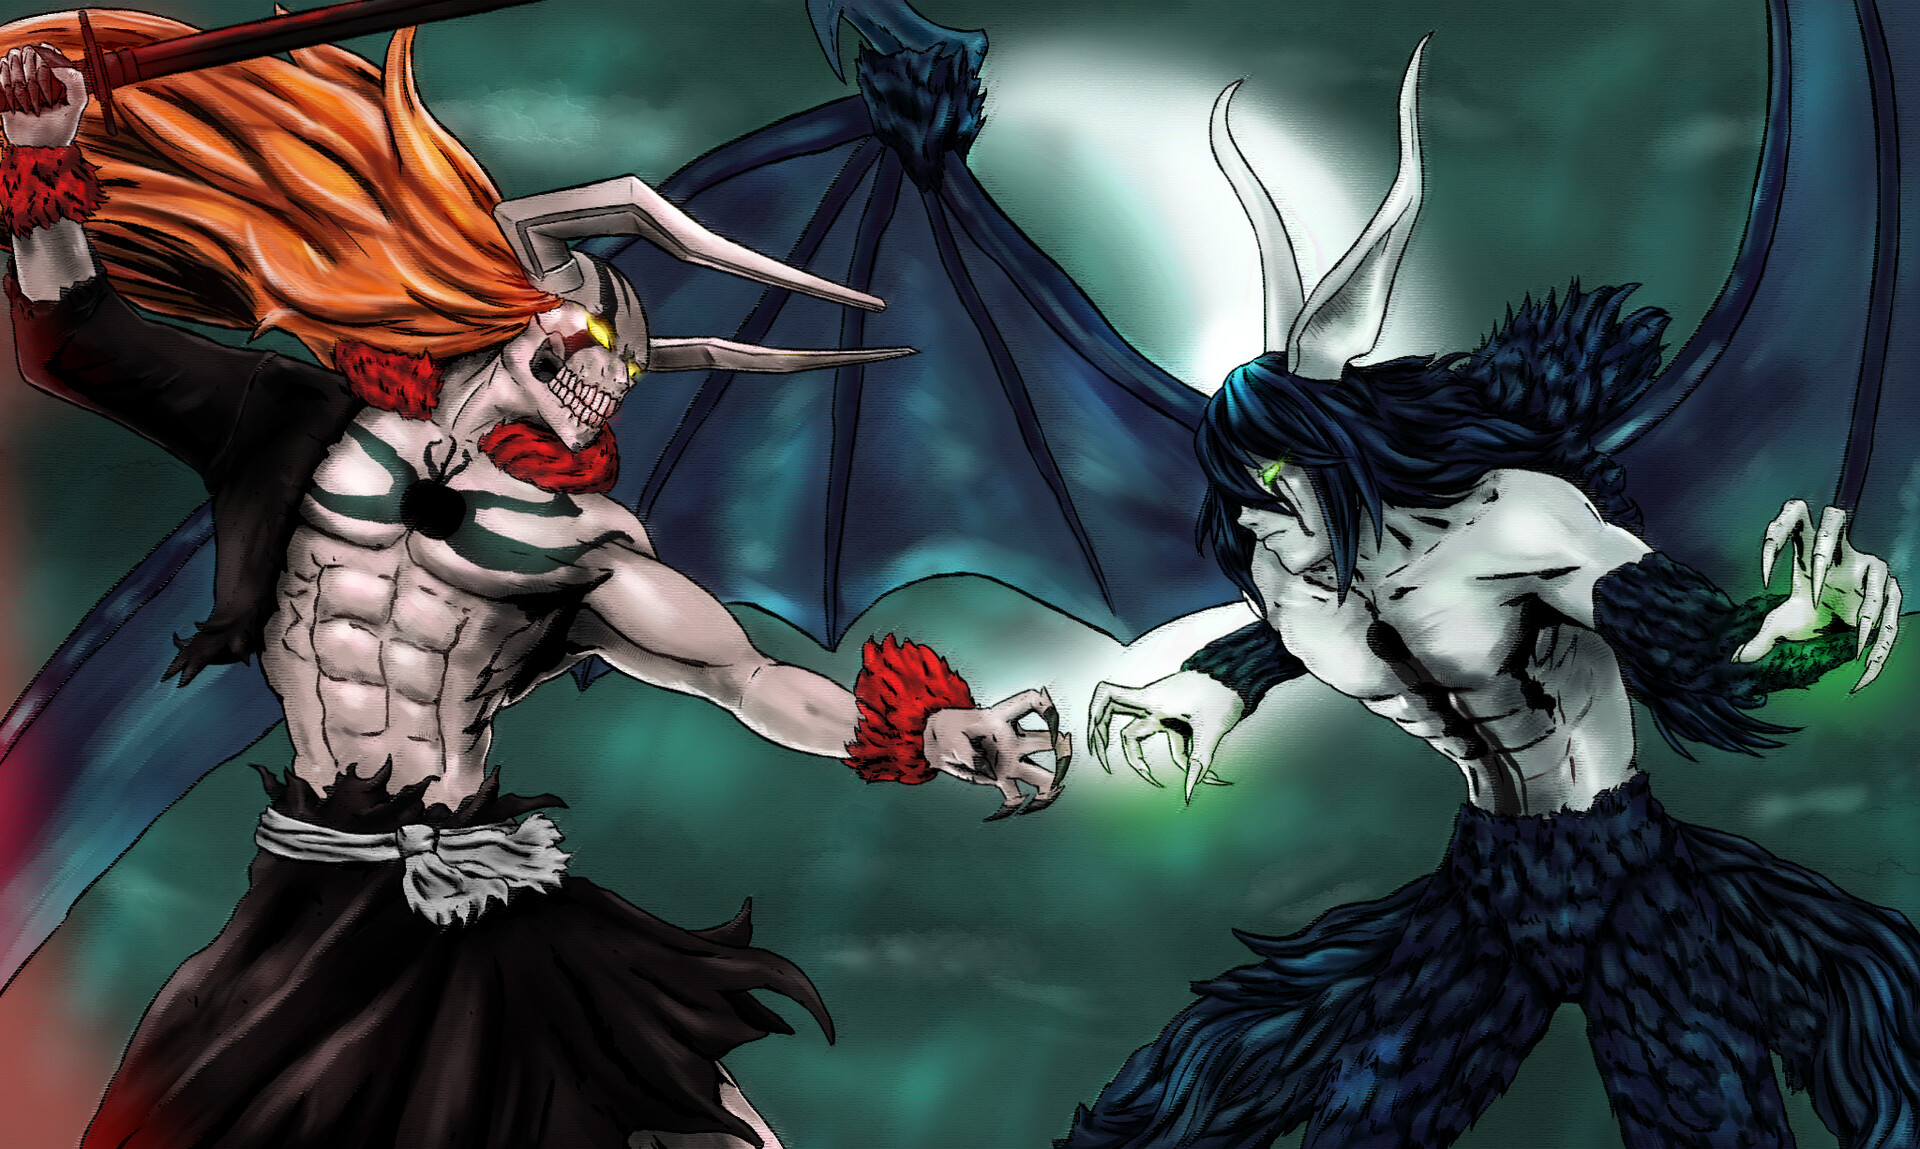 Ichigo vs Ulquiorra by Moon Baekho on ArtStation. 